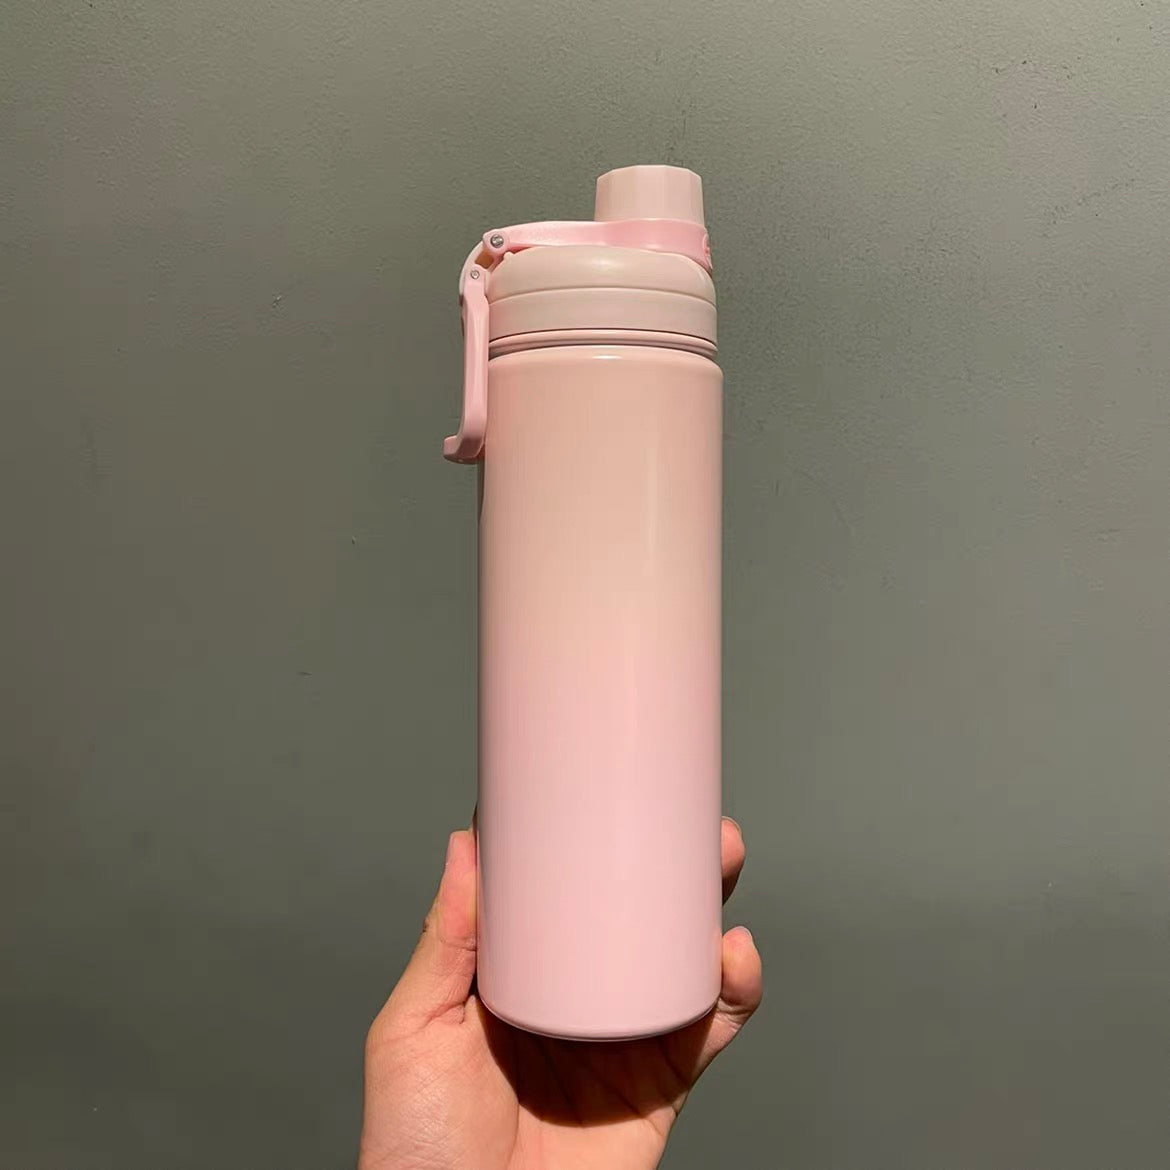 21oz China Pink Sakura Stainless Steel Travler Bottle